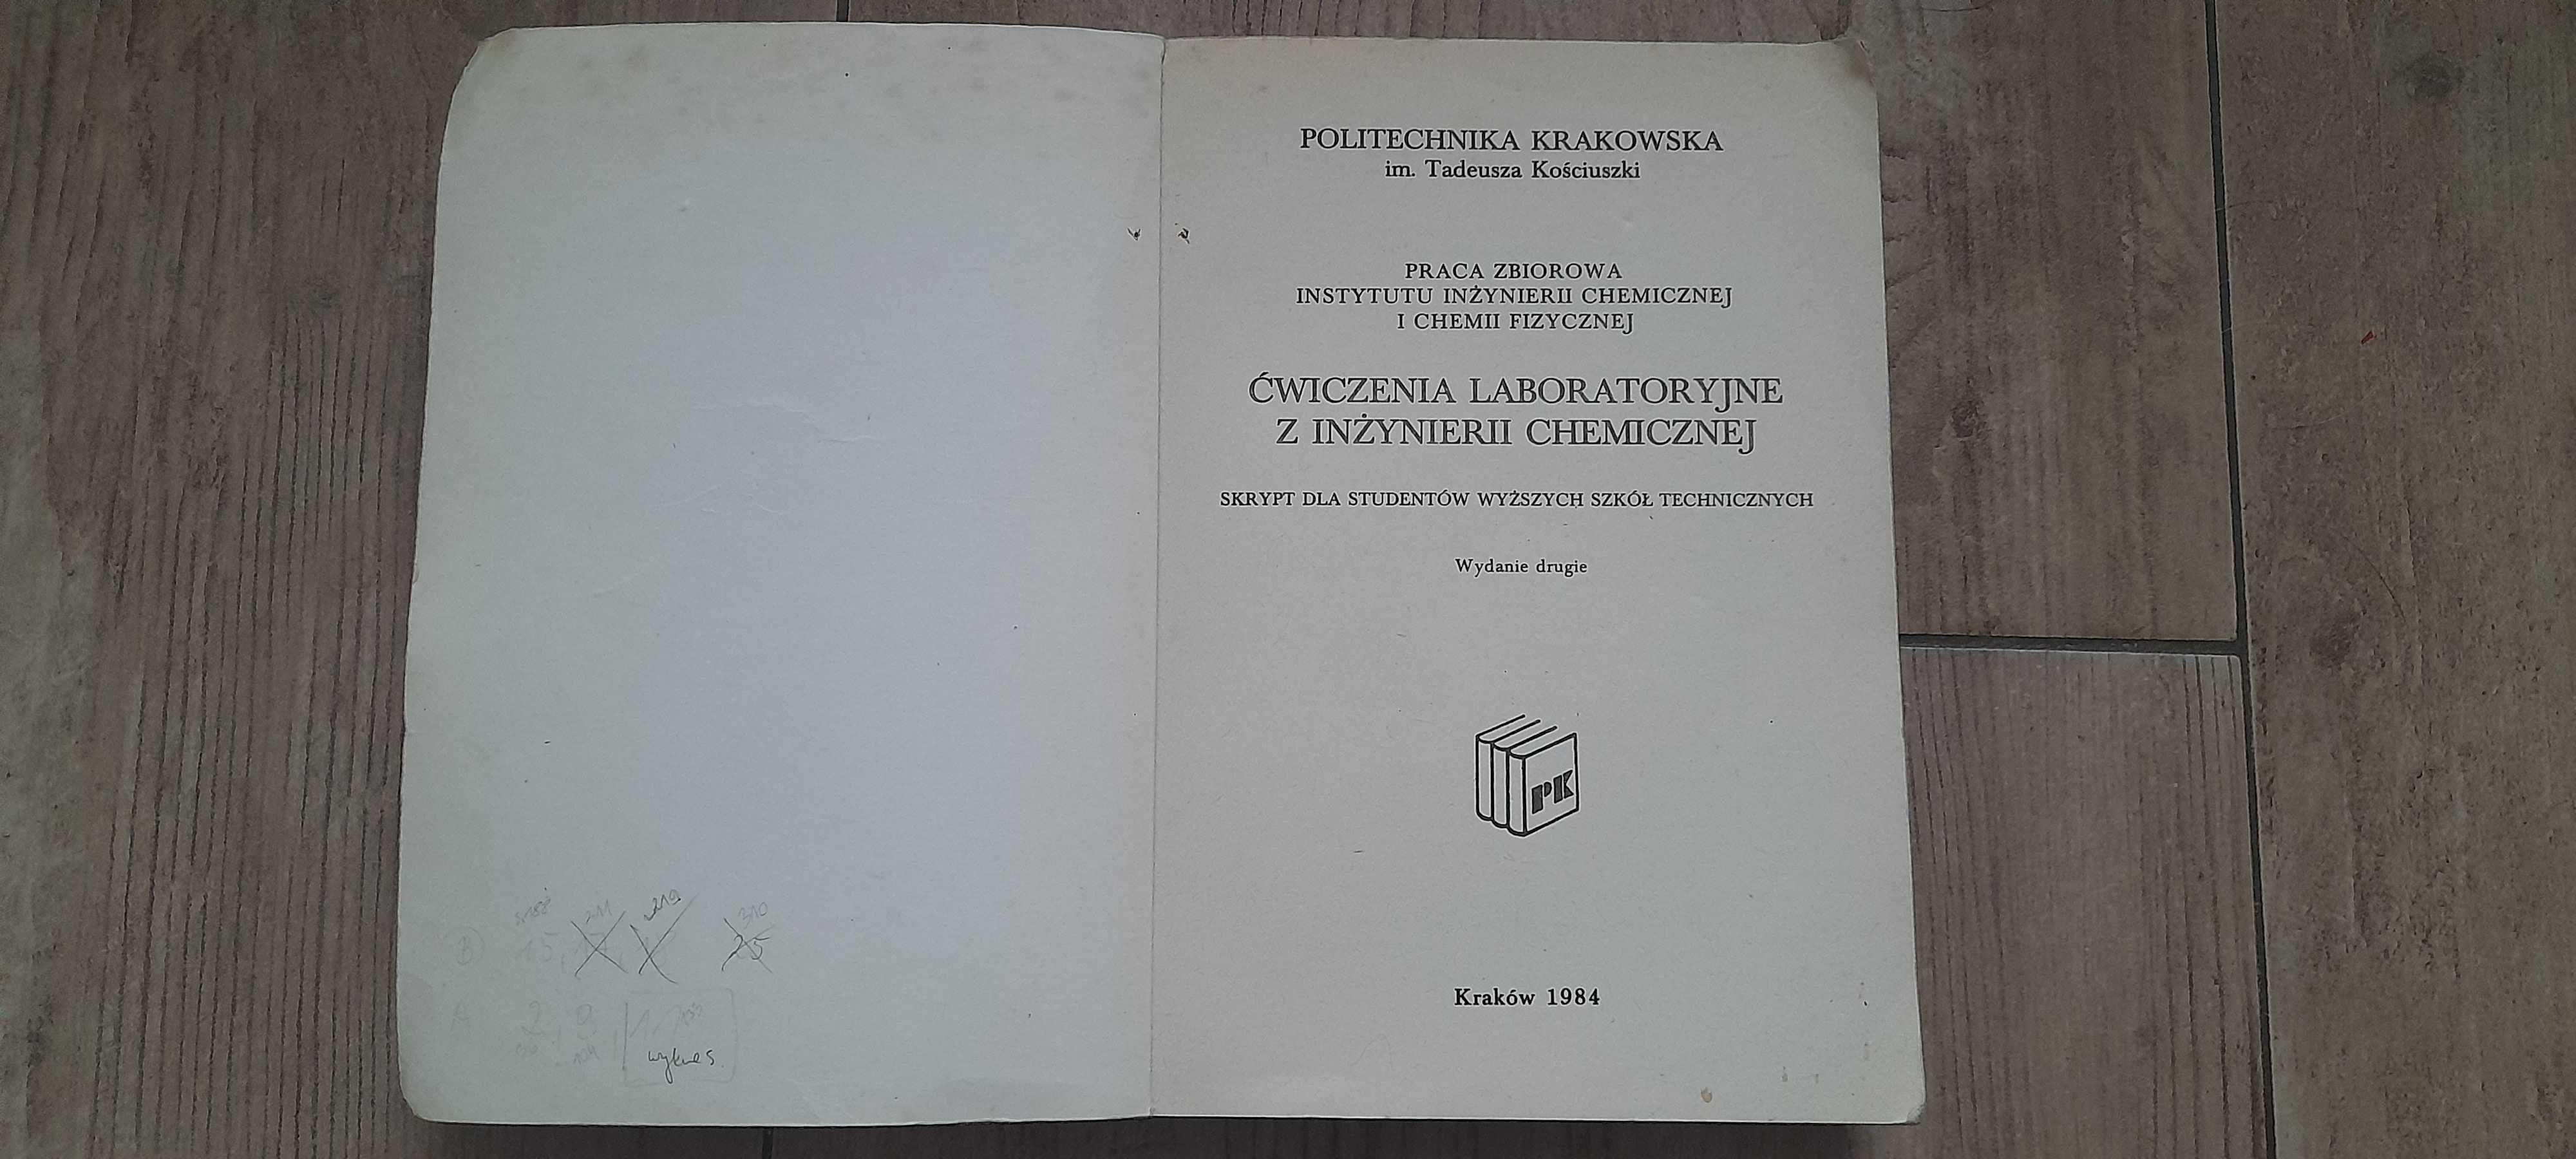 "Ćwiczenia Laboratoryjne z Inżynierii Chemicznej" - PK, Kraków 1984